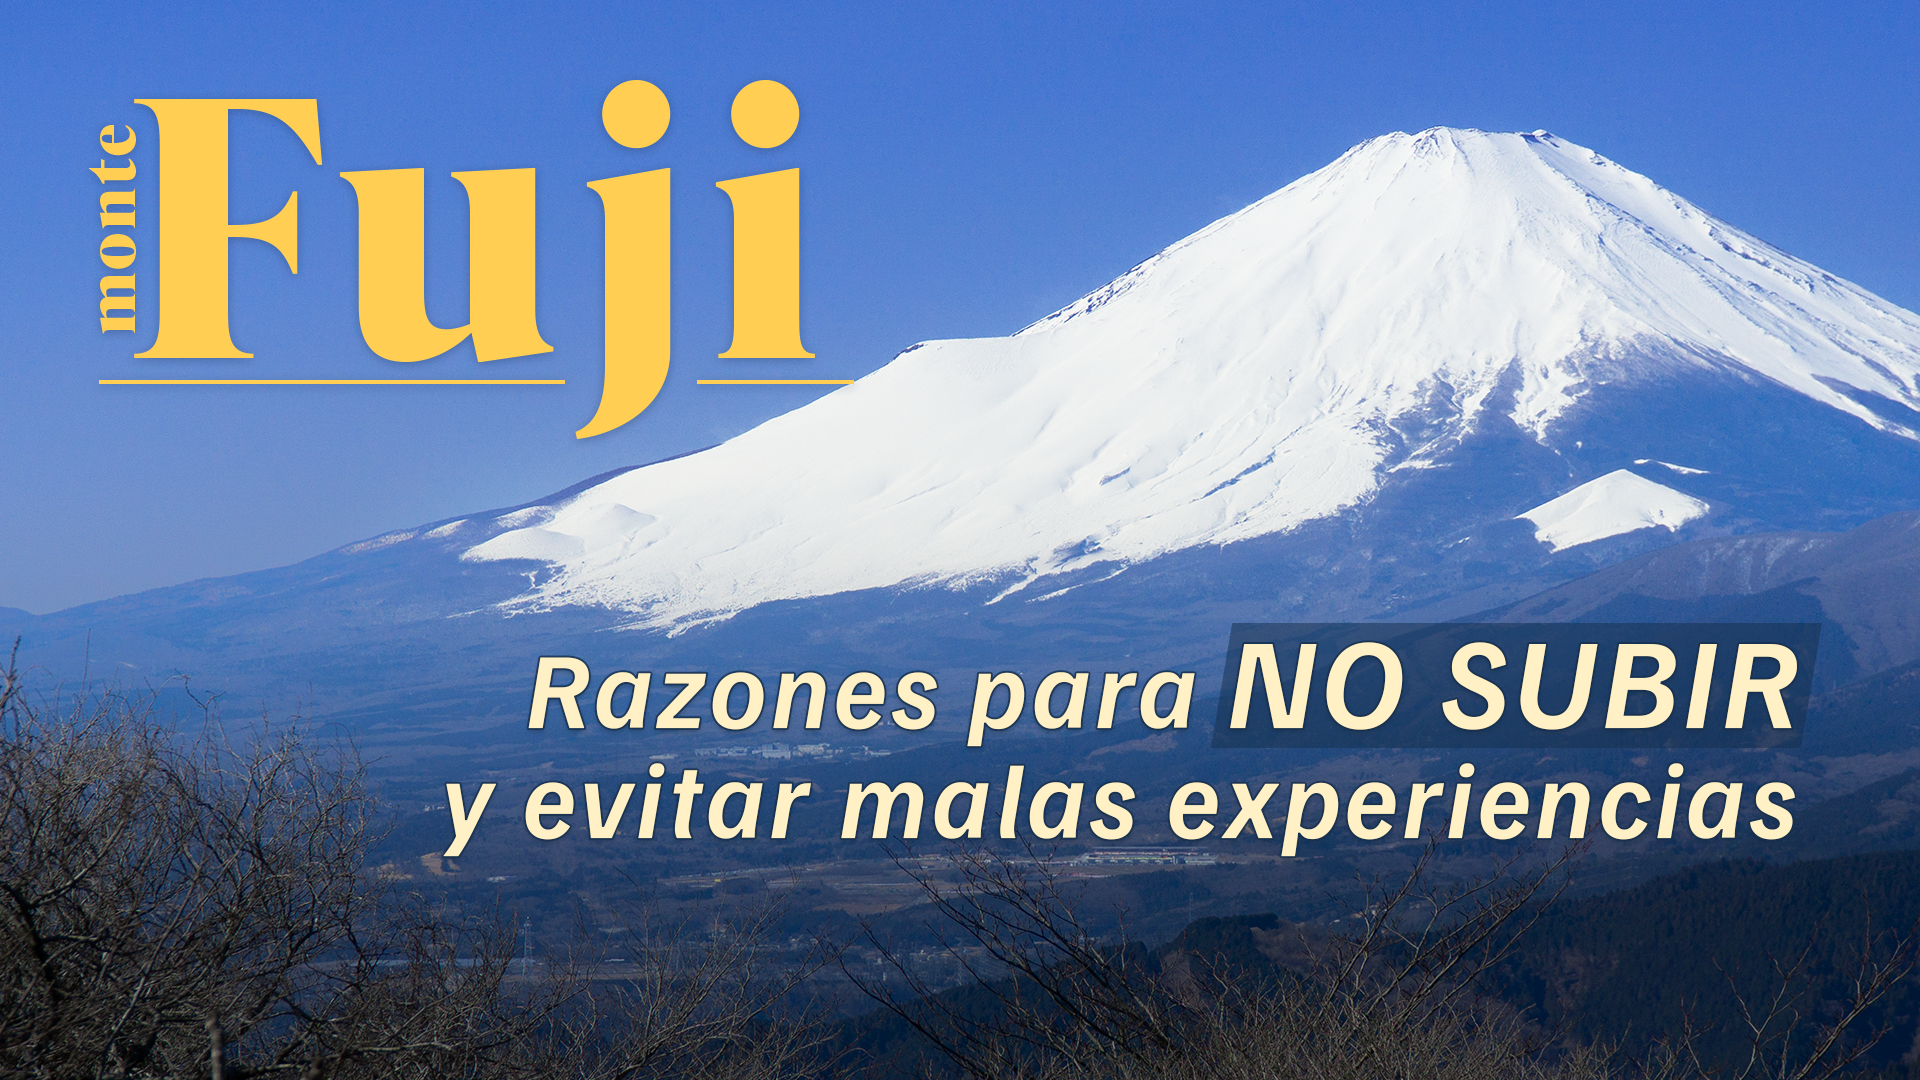 【Monte Fuji】 Razones para NO subir y evitar malas experiencias.